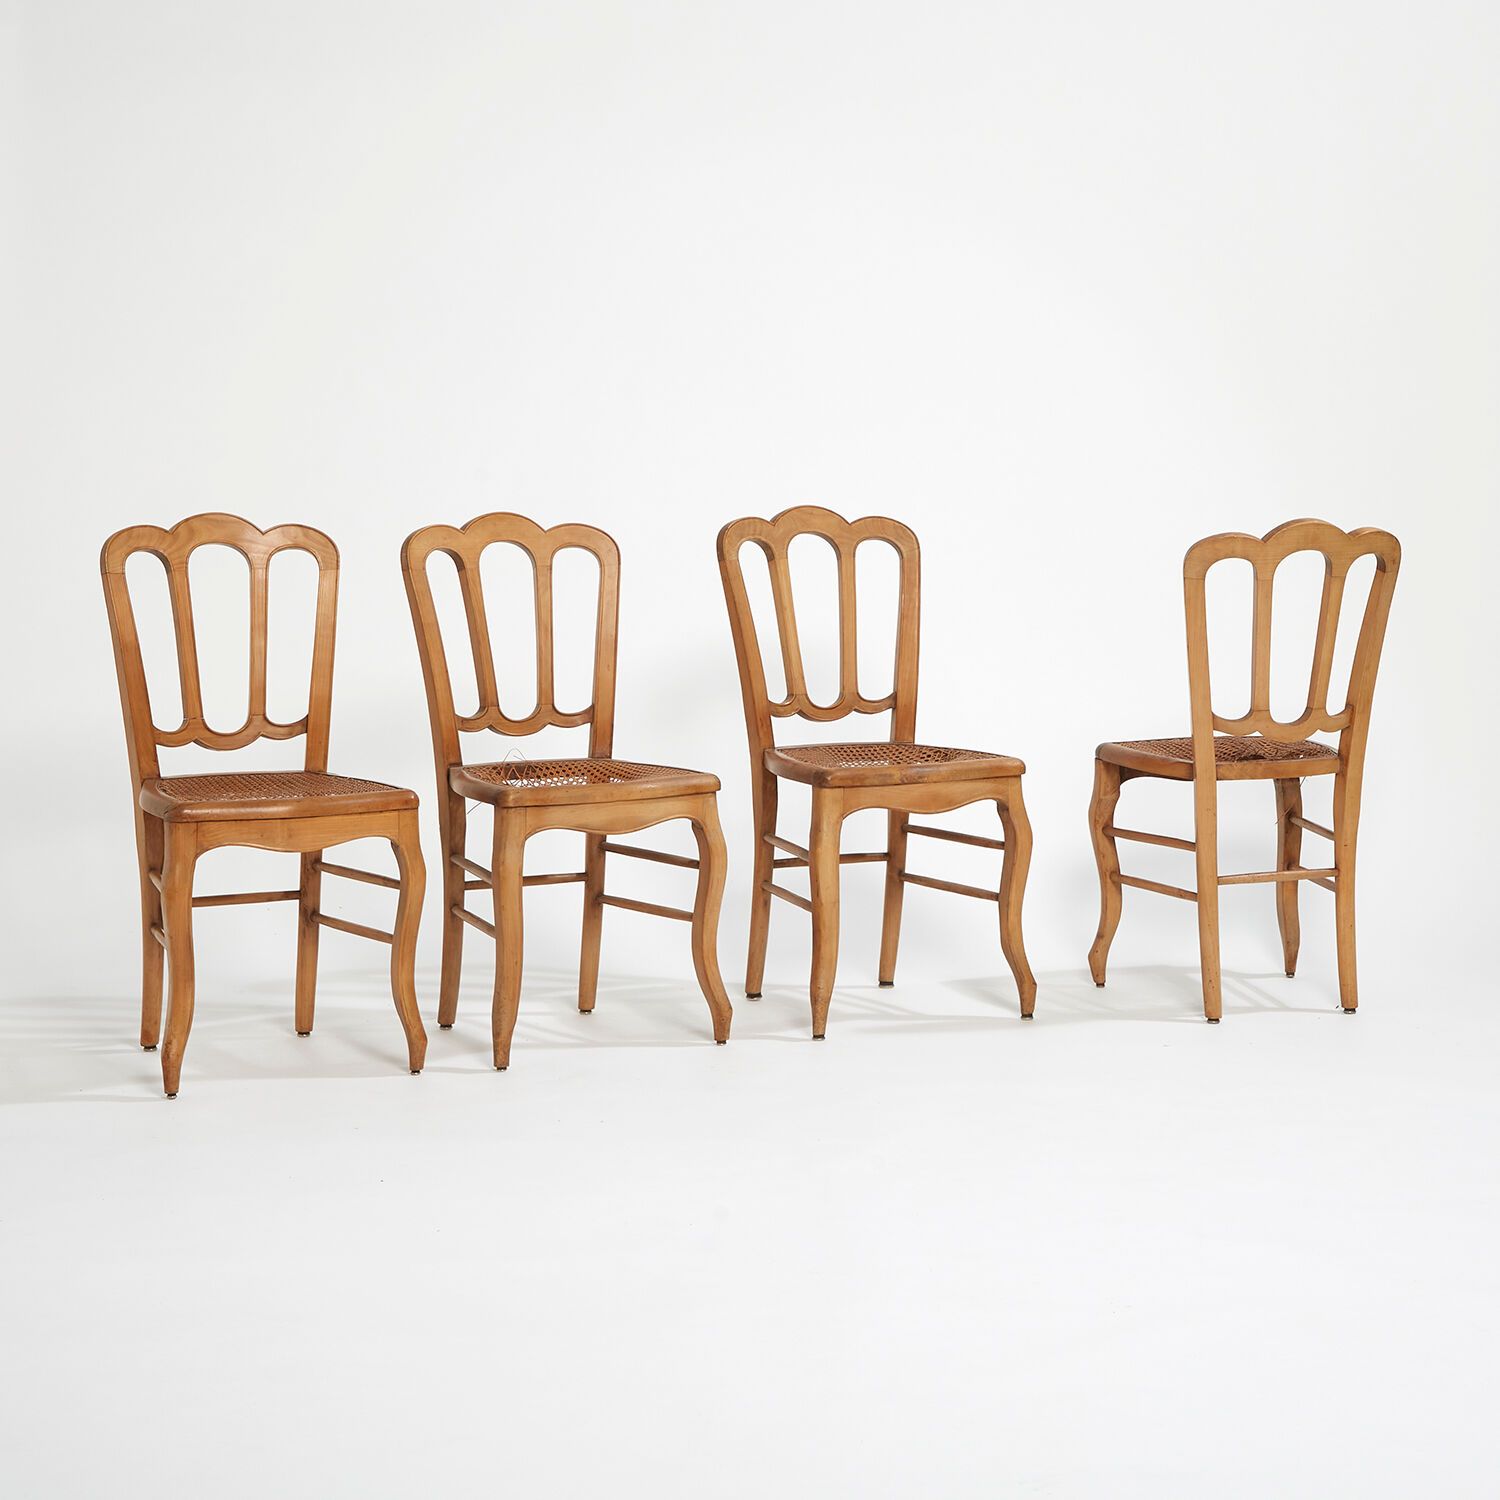 XX SIÈCLE 二十世纪
一套 6 把白蜡木椅，柳条编织的座椅。(座椅破损）。
高 90 厘米